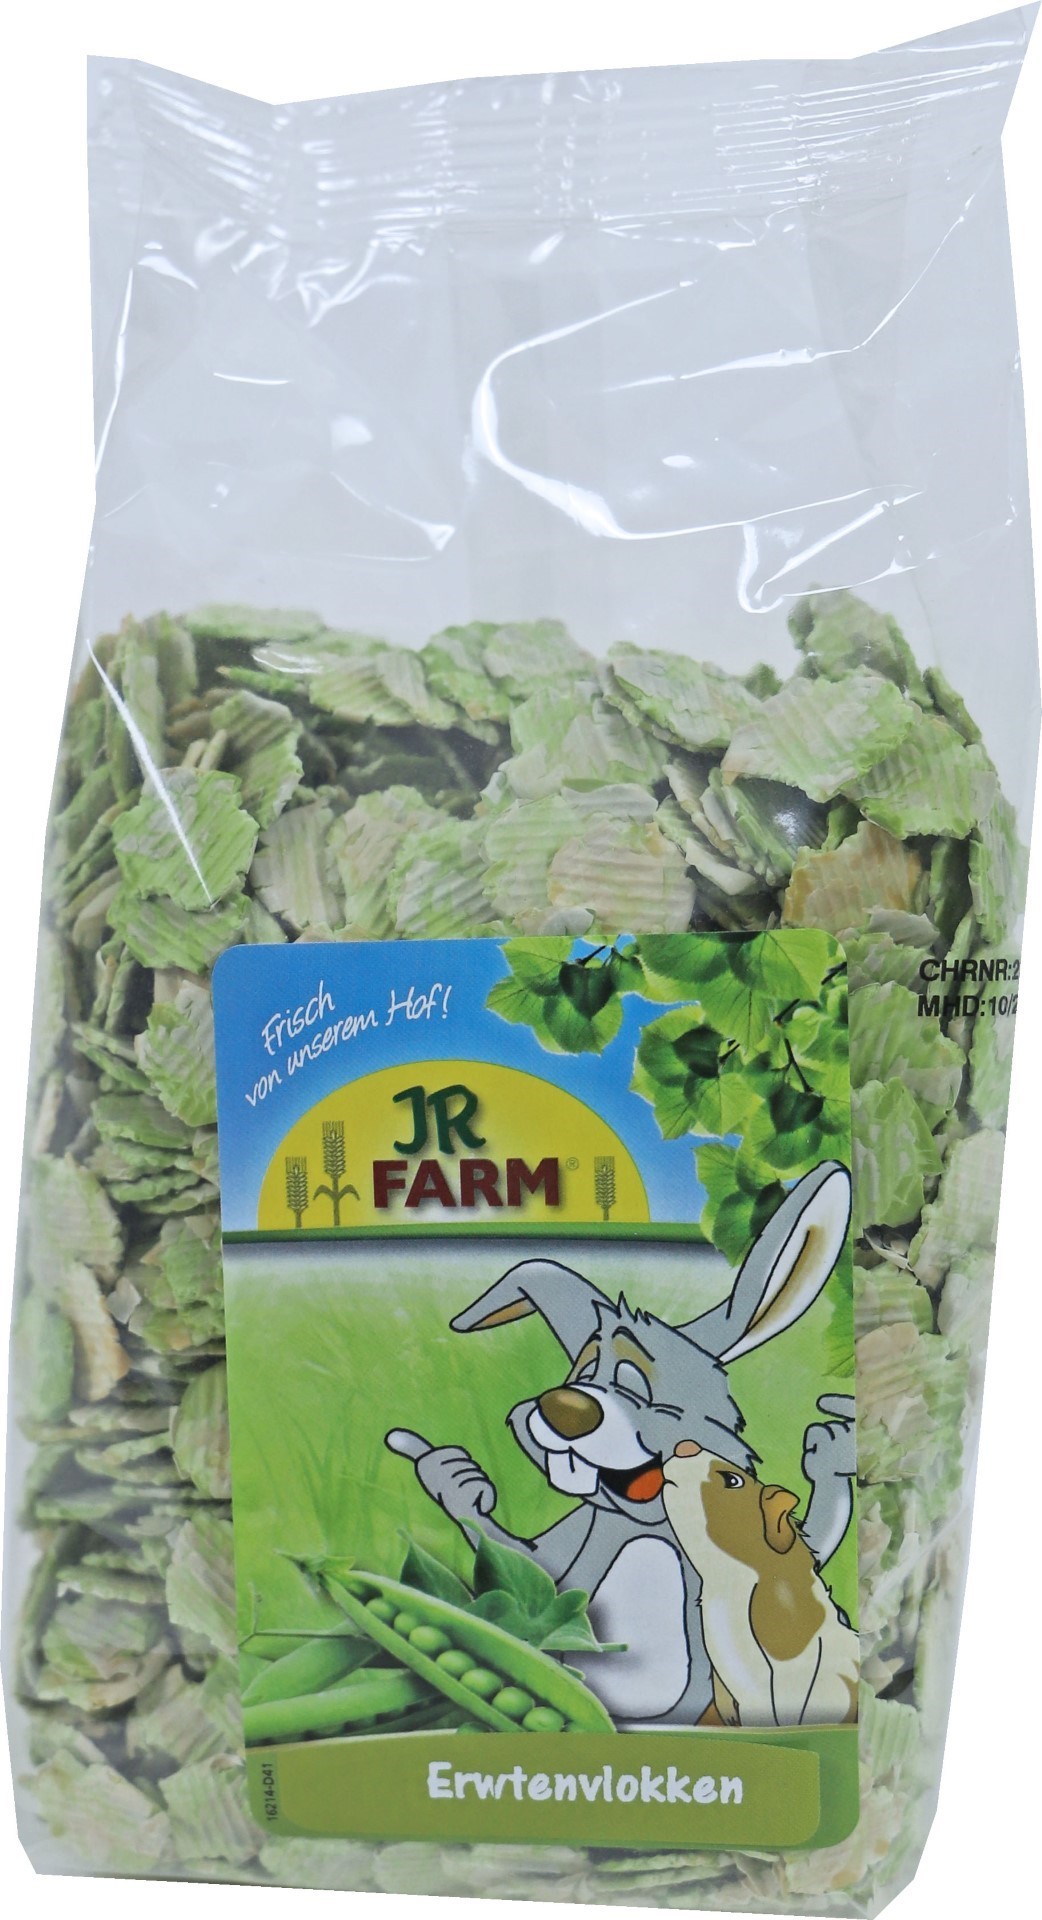 JR Farm knaagdier erwtenvlokken 200 gram 16255